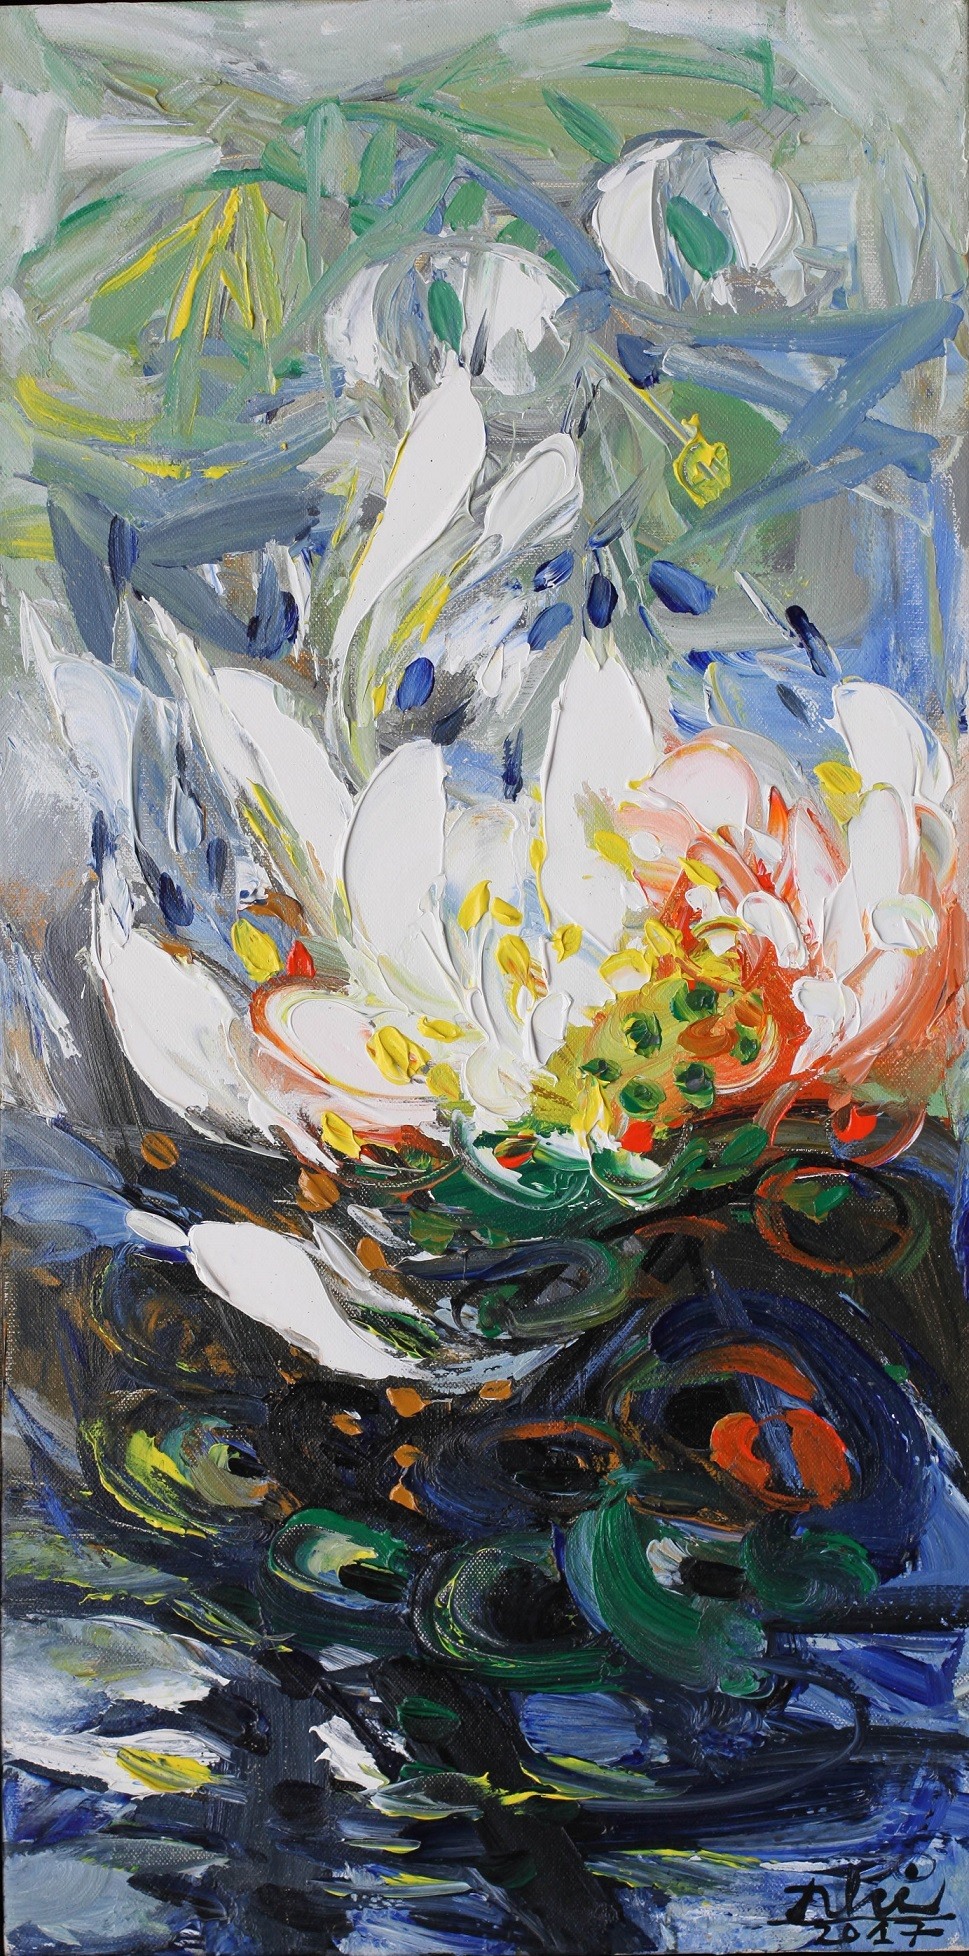 Tác phẩm “Hoa sen 2” của họa sĩ Bình Nhi, chất liệu sơn dầu